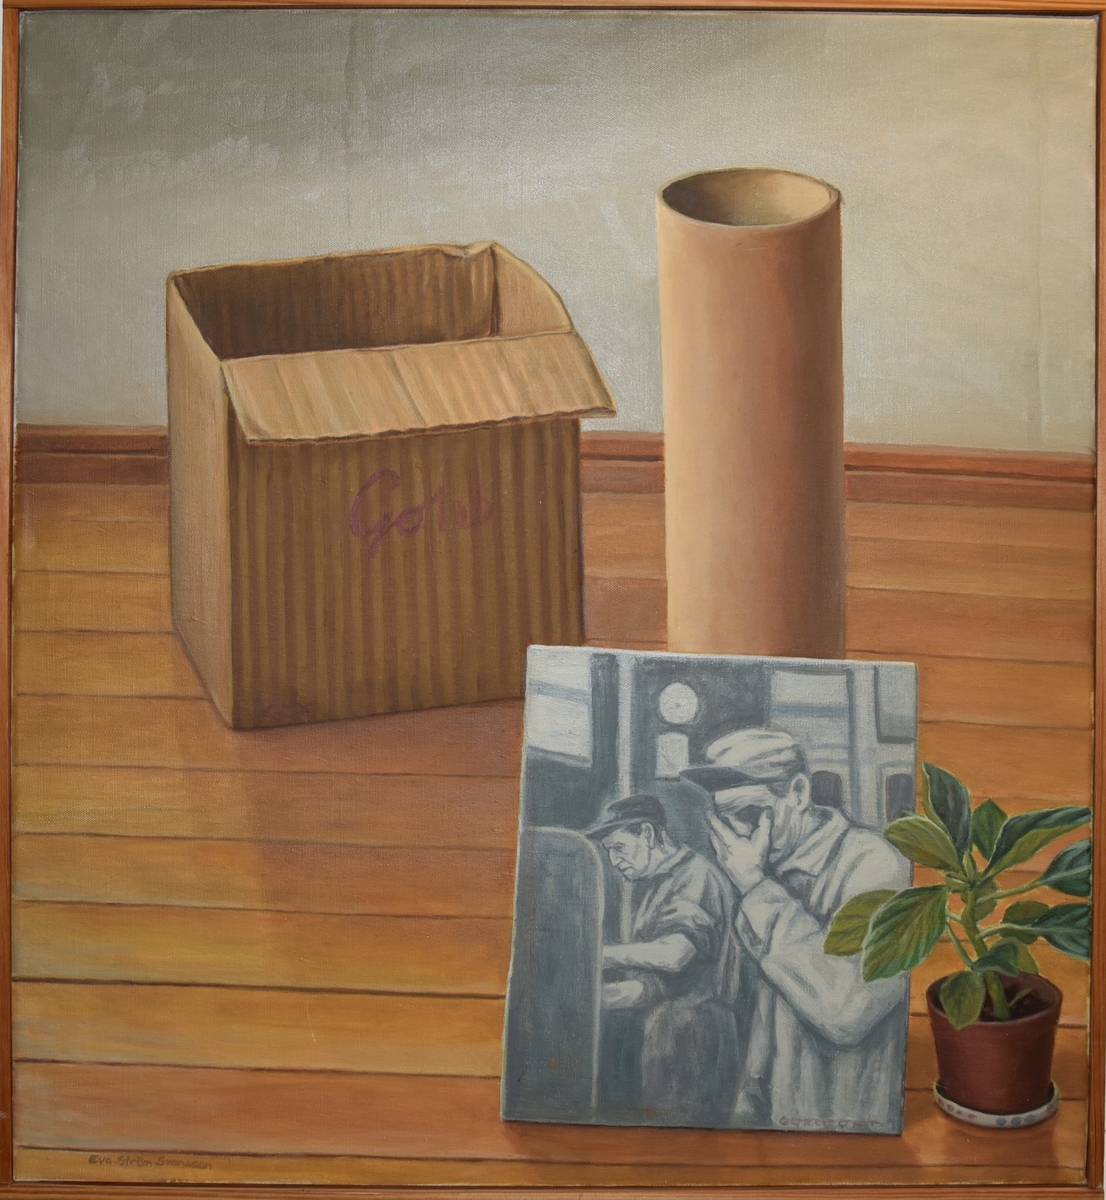 På ett gulbrunt parkettgolv står en papplåda, en papprulle, ett svartvitt foto av två arbetare, samt en krukväxt.